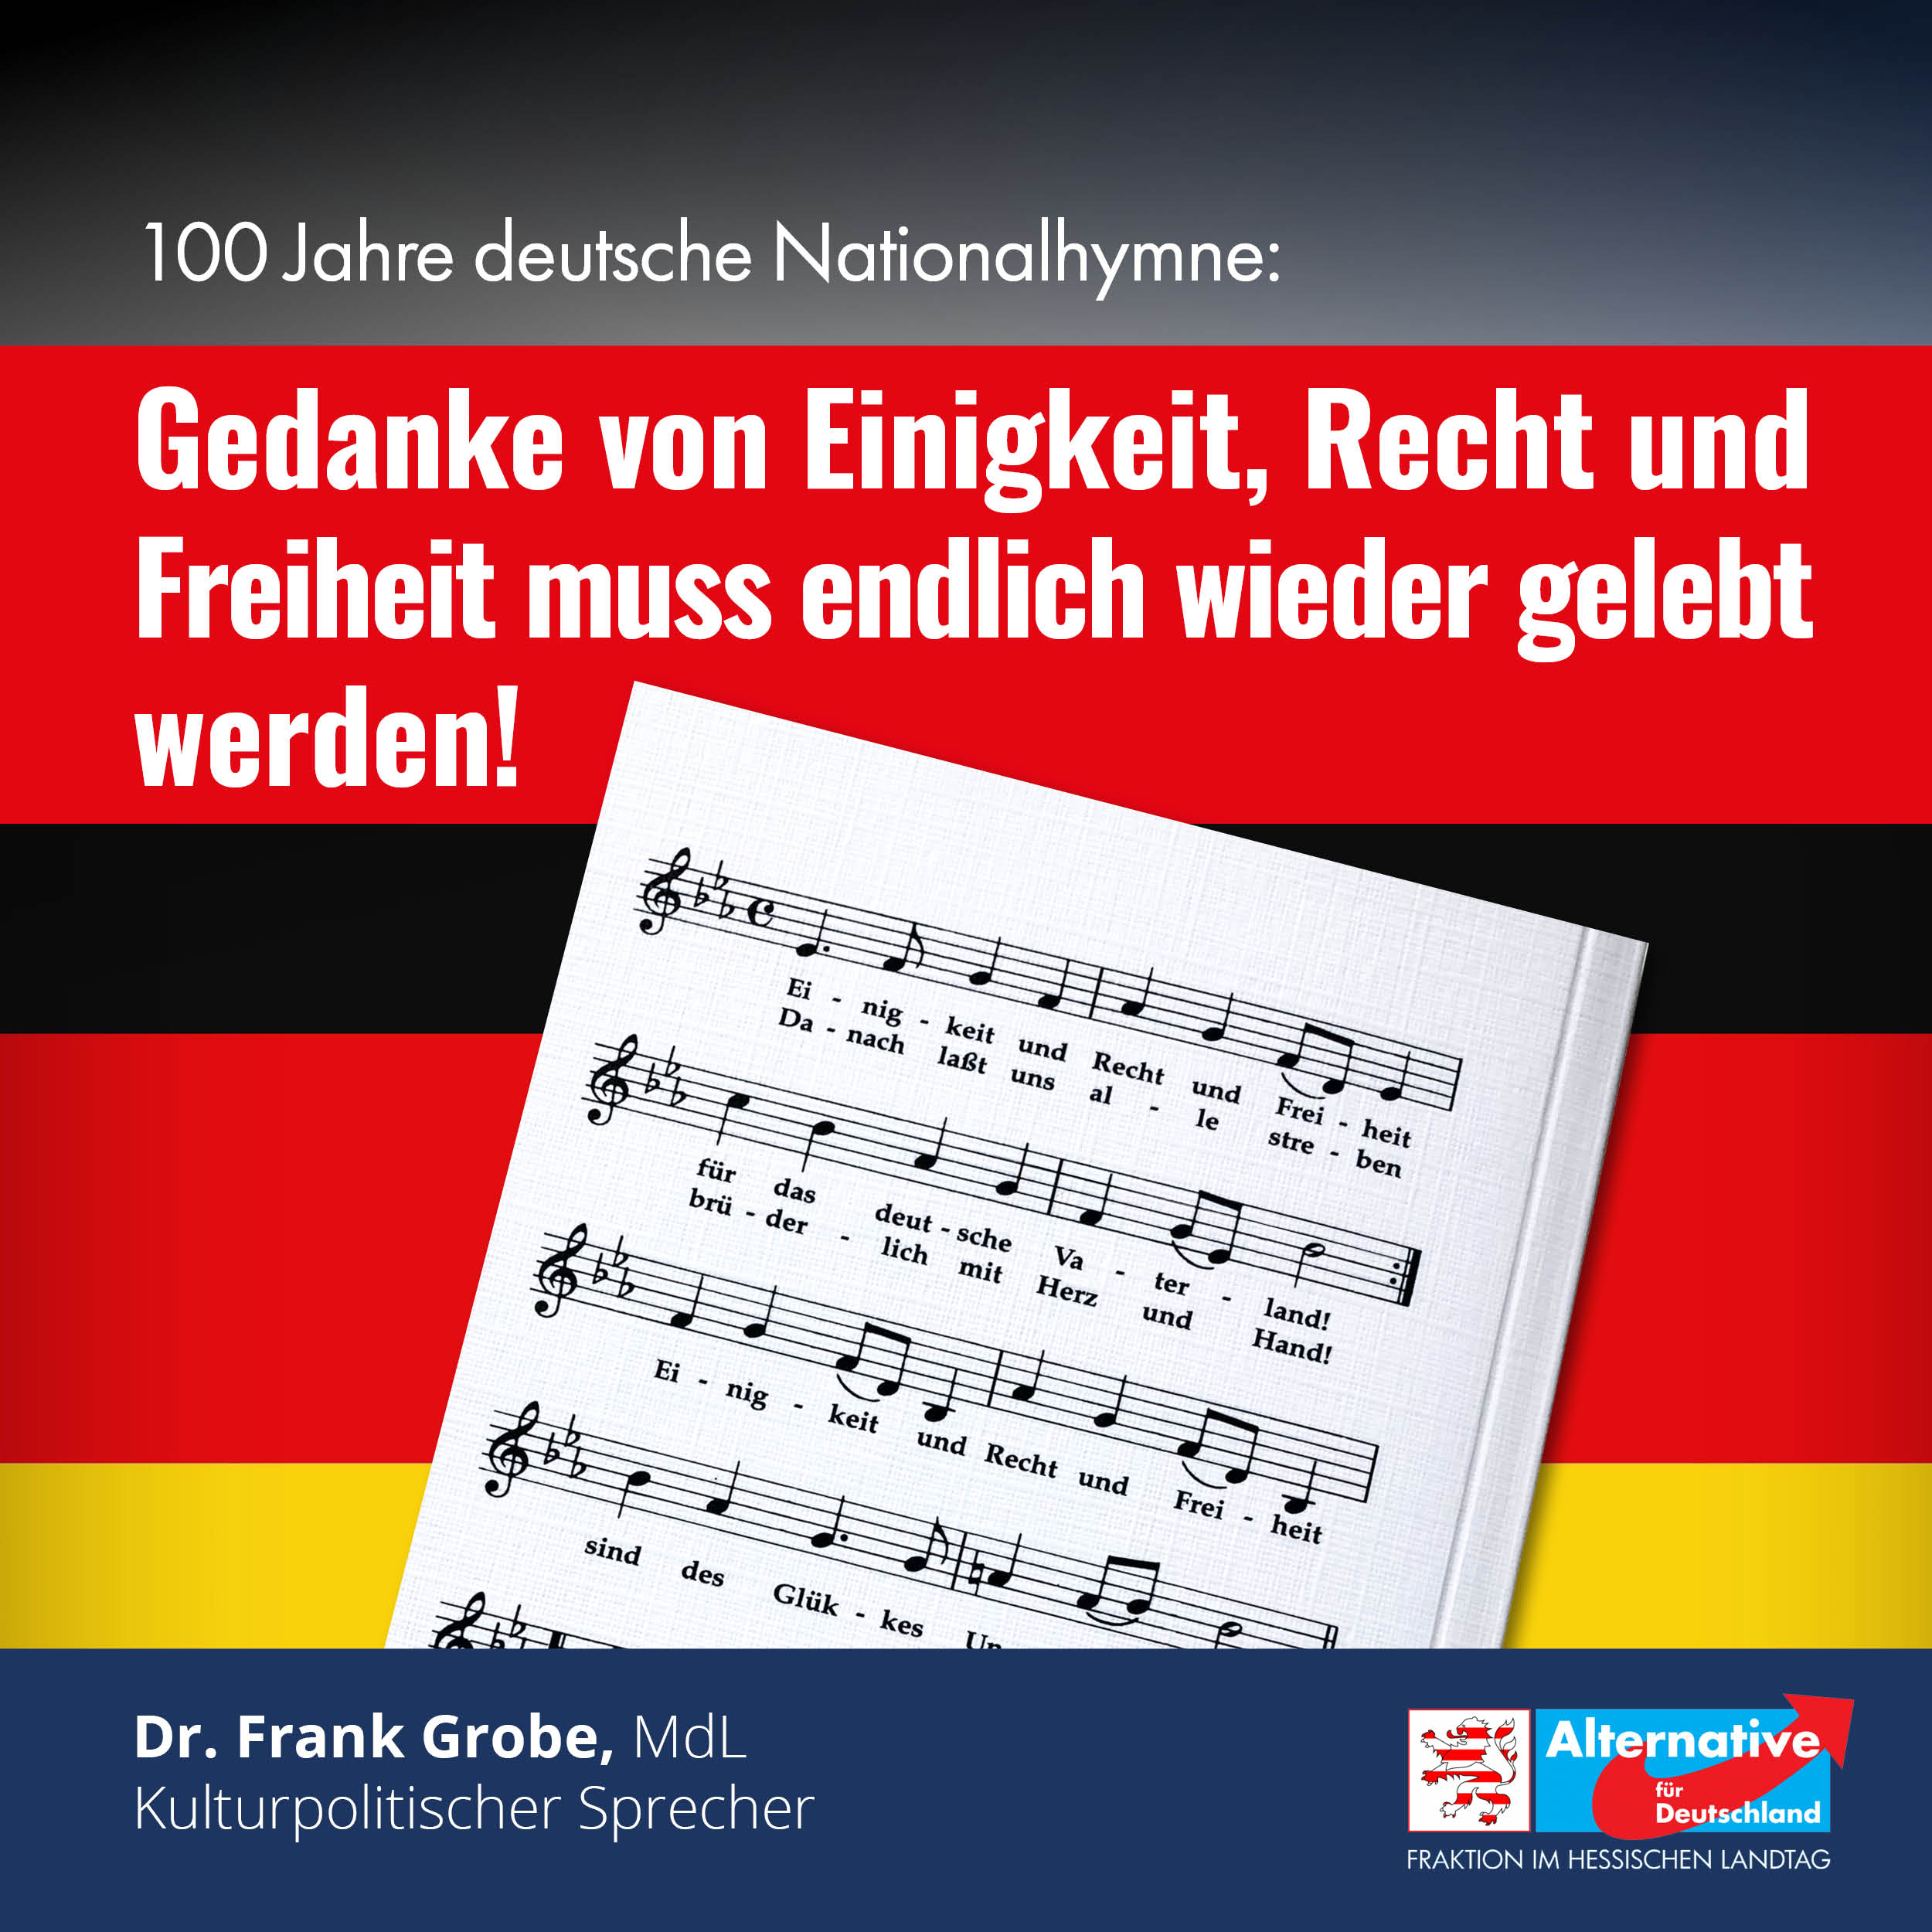 You are currently viewing 100 Jahre deutsche Nationalhymne: Gedanke von Einigkeit, Recht und Freiheit muss endlich wieder gelebt werden